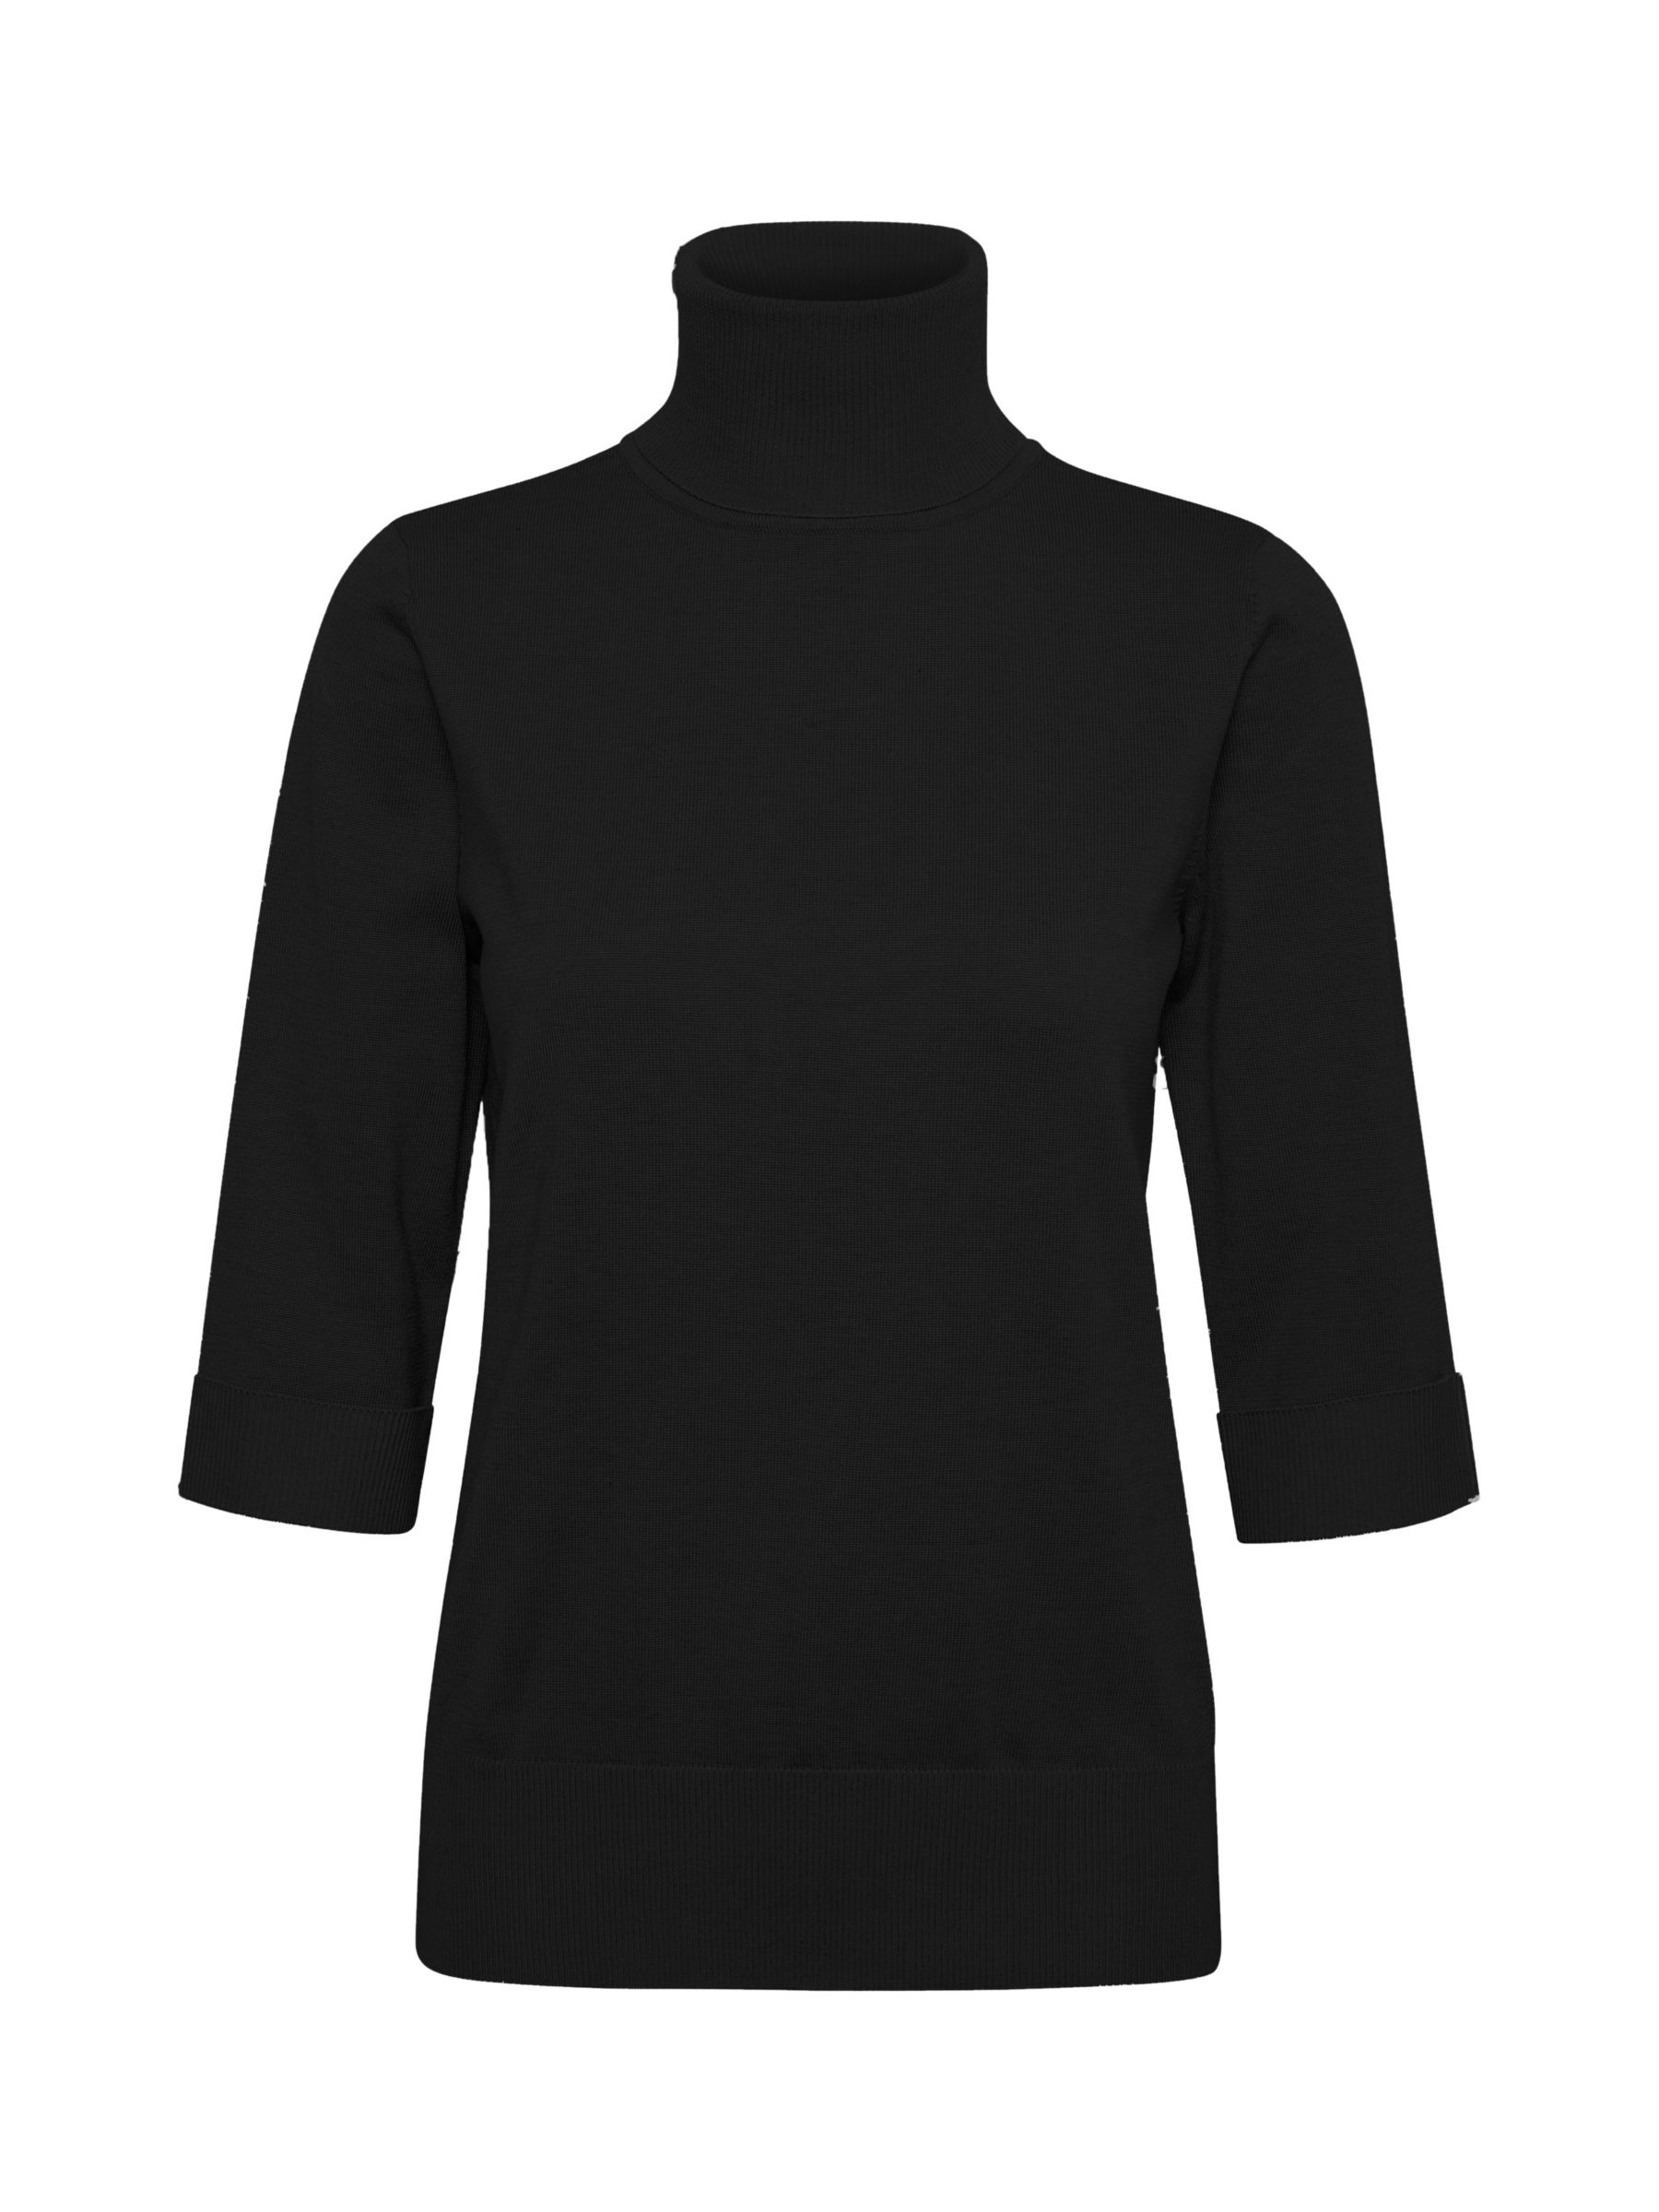 Buy Saint Tropez Kila Rollneck Cropped Sleeve Jumper, Black Online at johnlewis.com